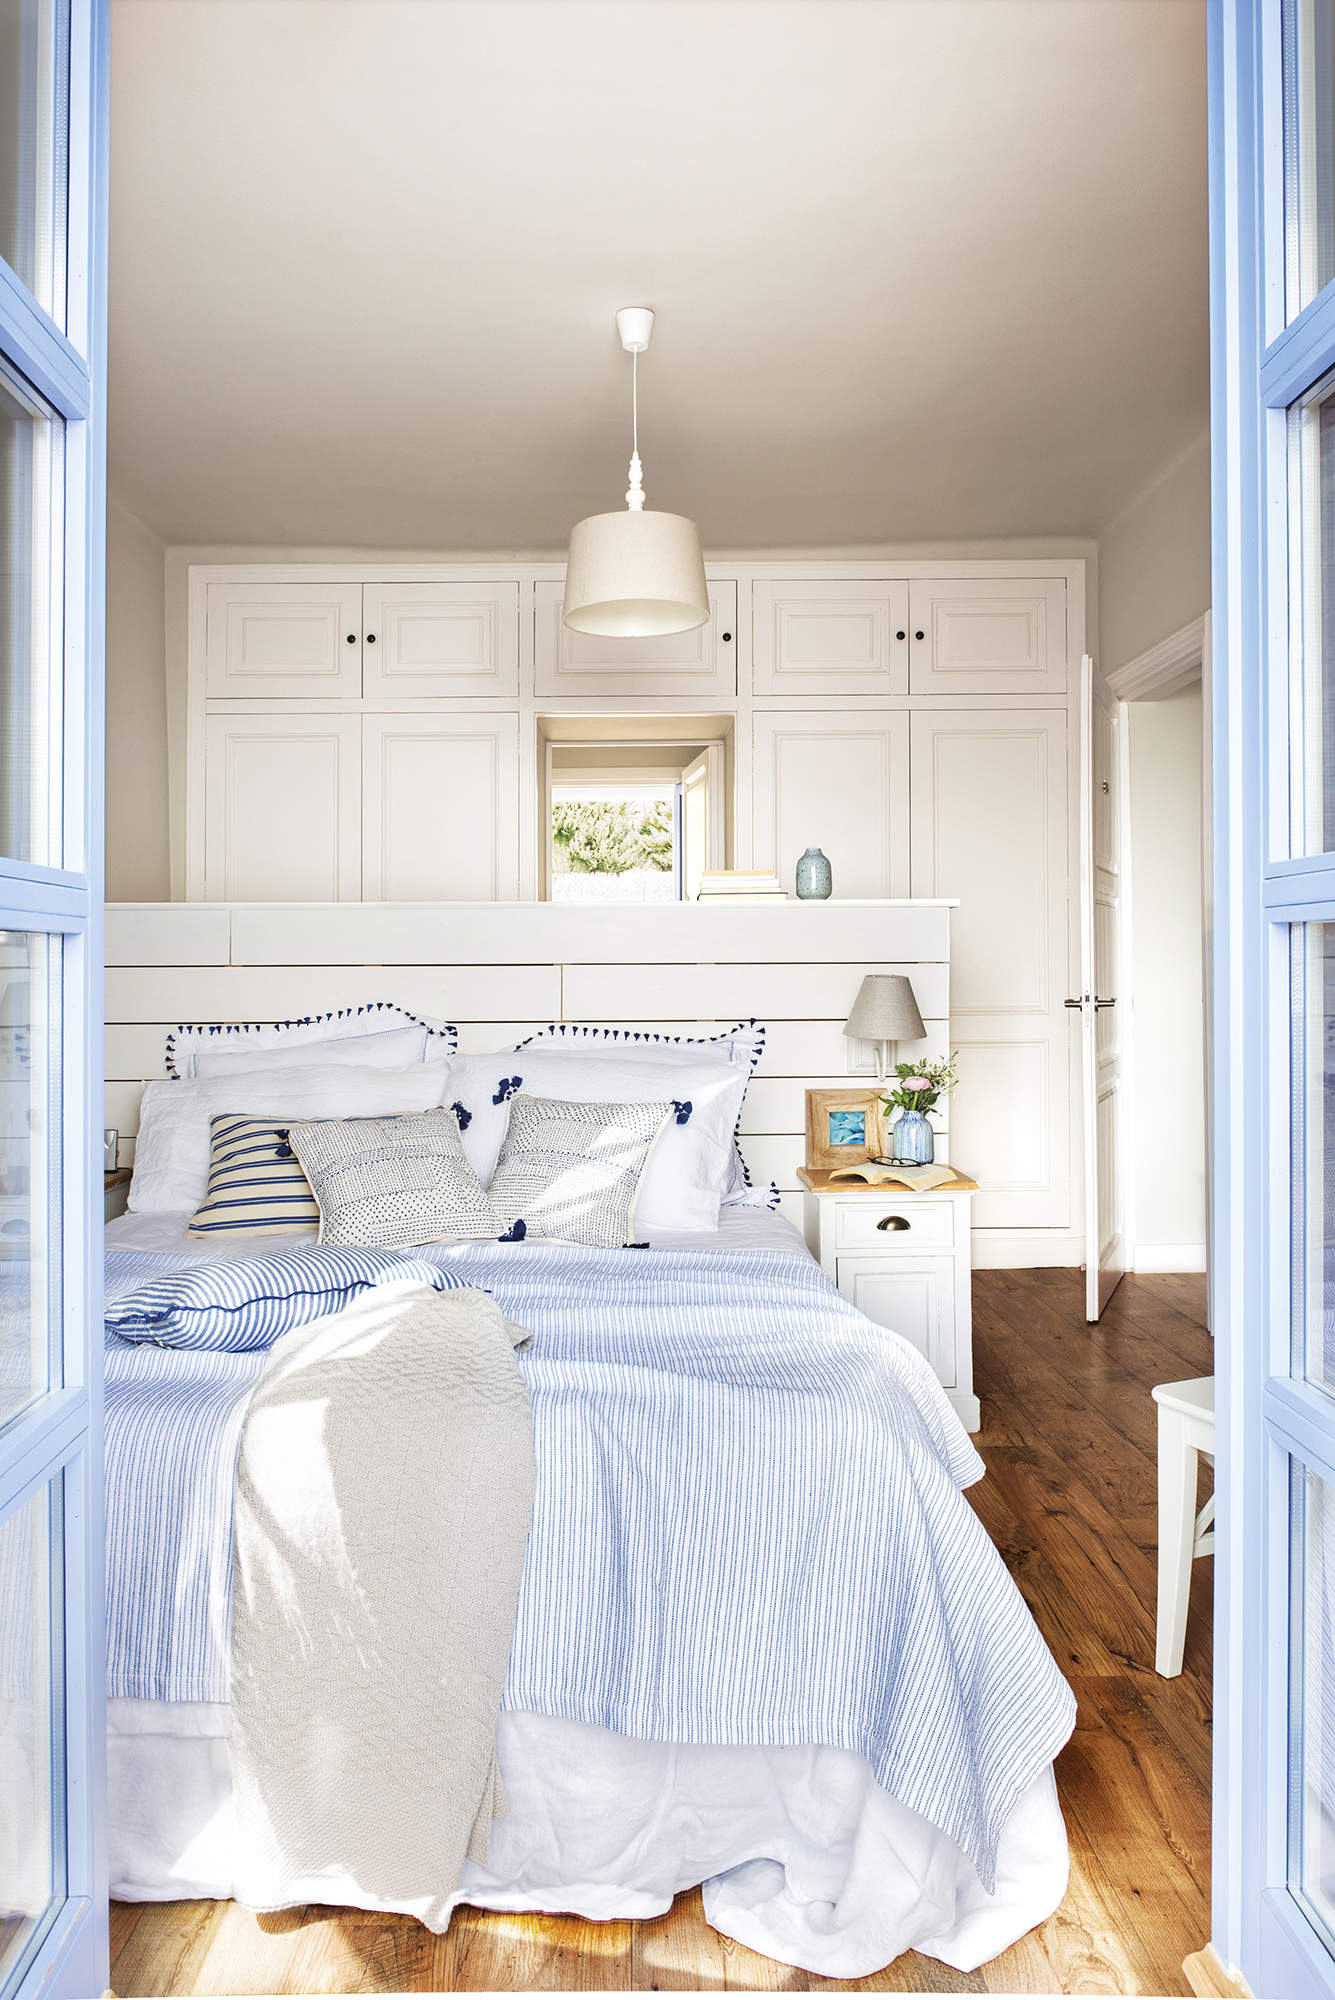 Dormitorio de estilo mediterráneo en azul y blanco. 